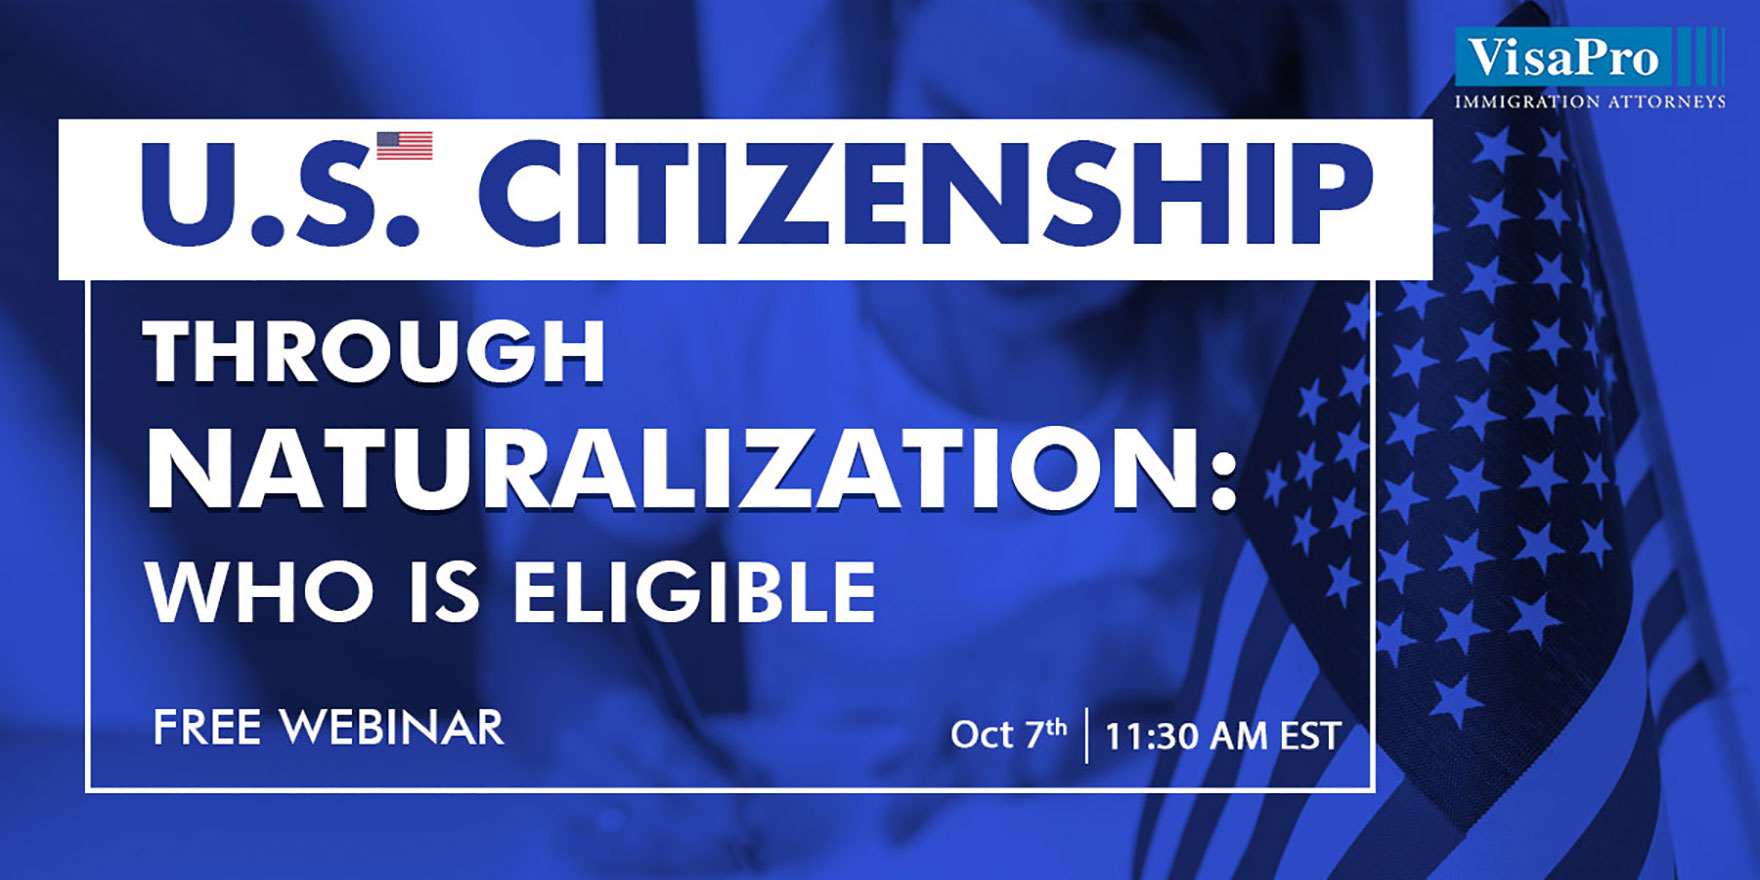 U.S. Citizenship Through Naturalization: Who Is Eligible, Washington,Washington, D.C,United States